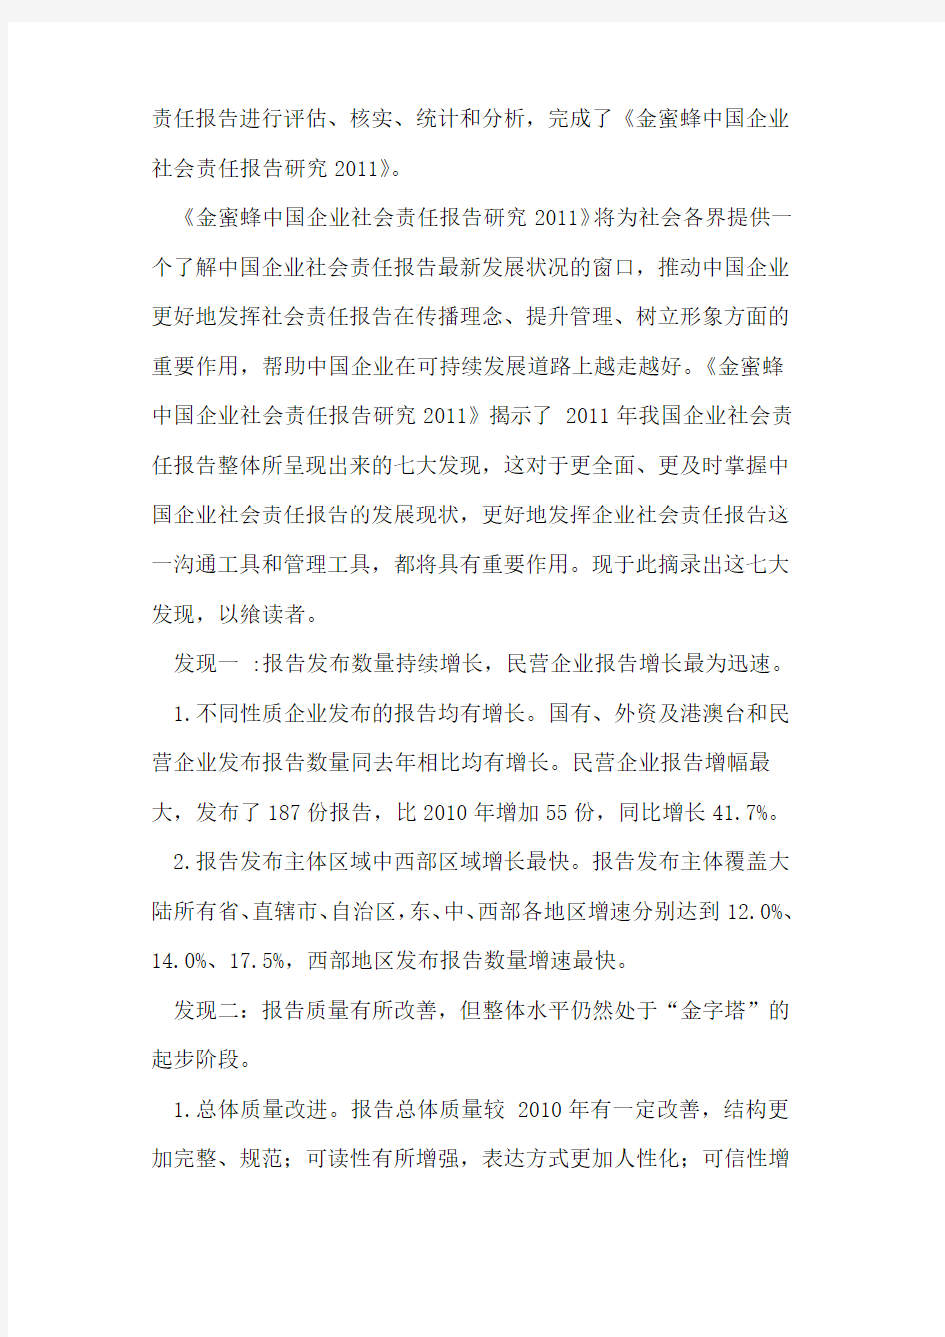 2011中国企业社会责任报告七大发现